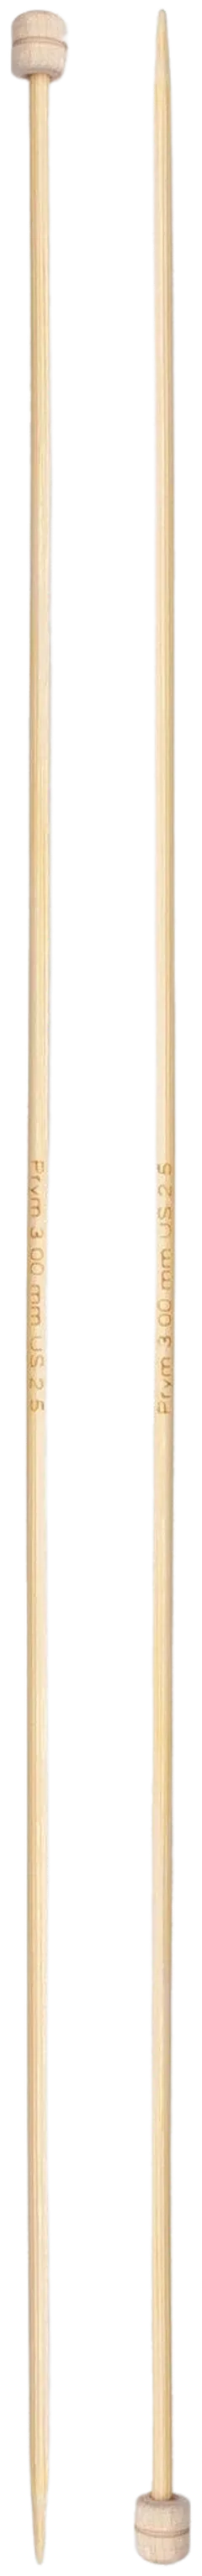 Prym neulepuikko 3,0 33cm bambu - 2